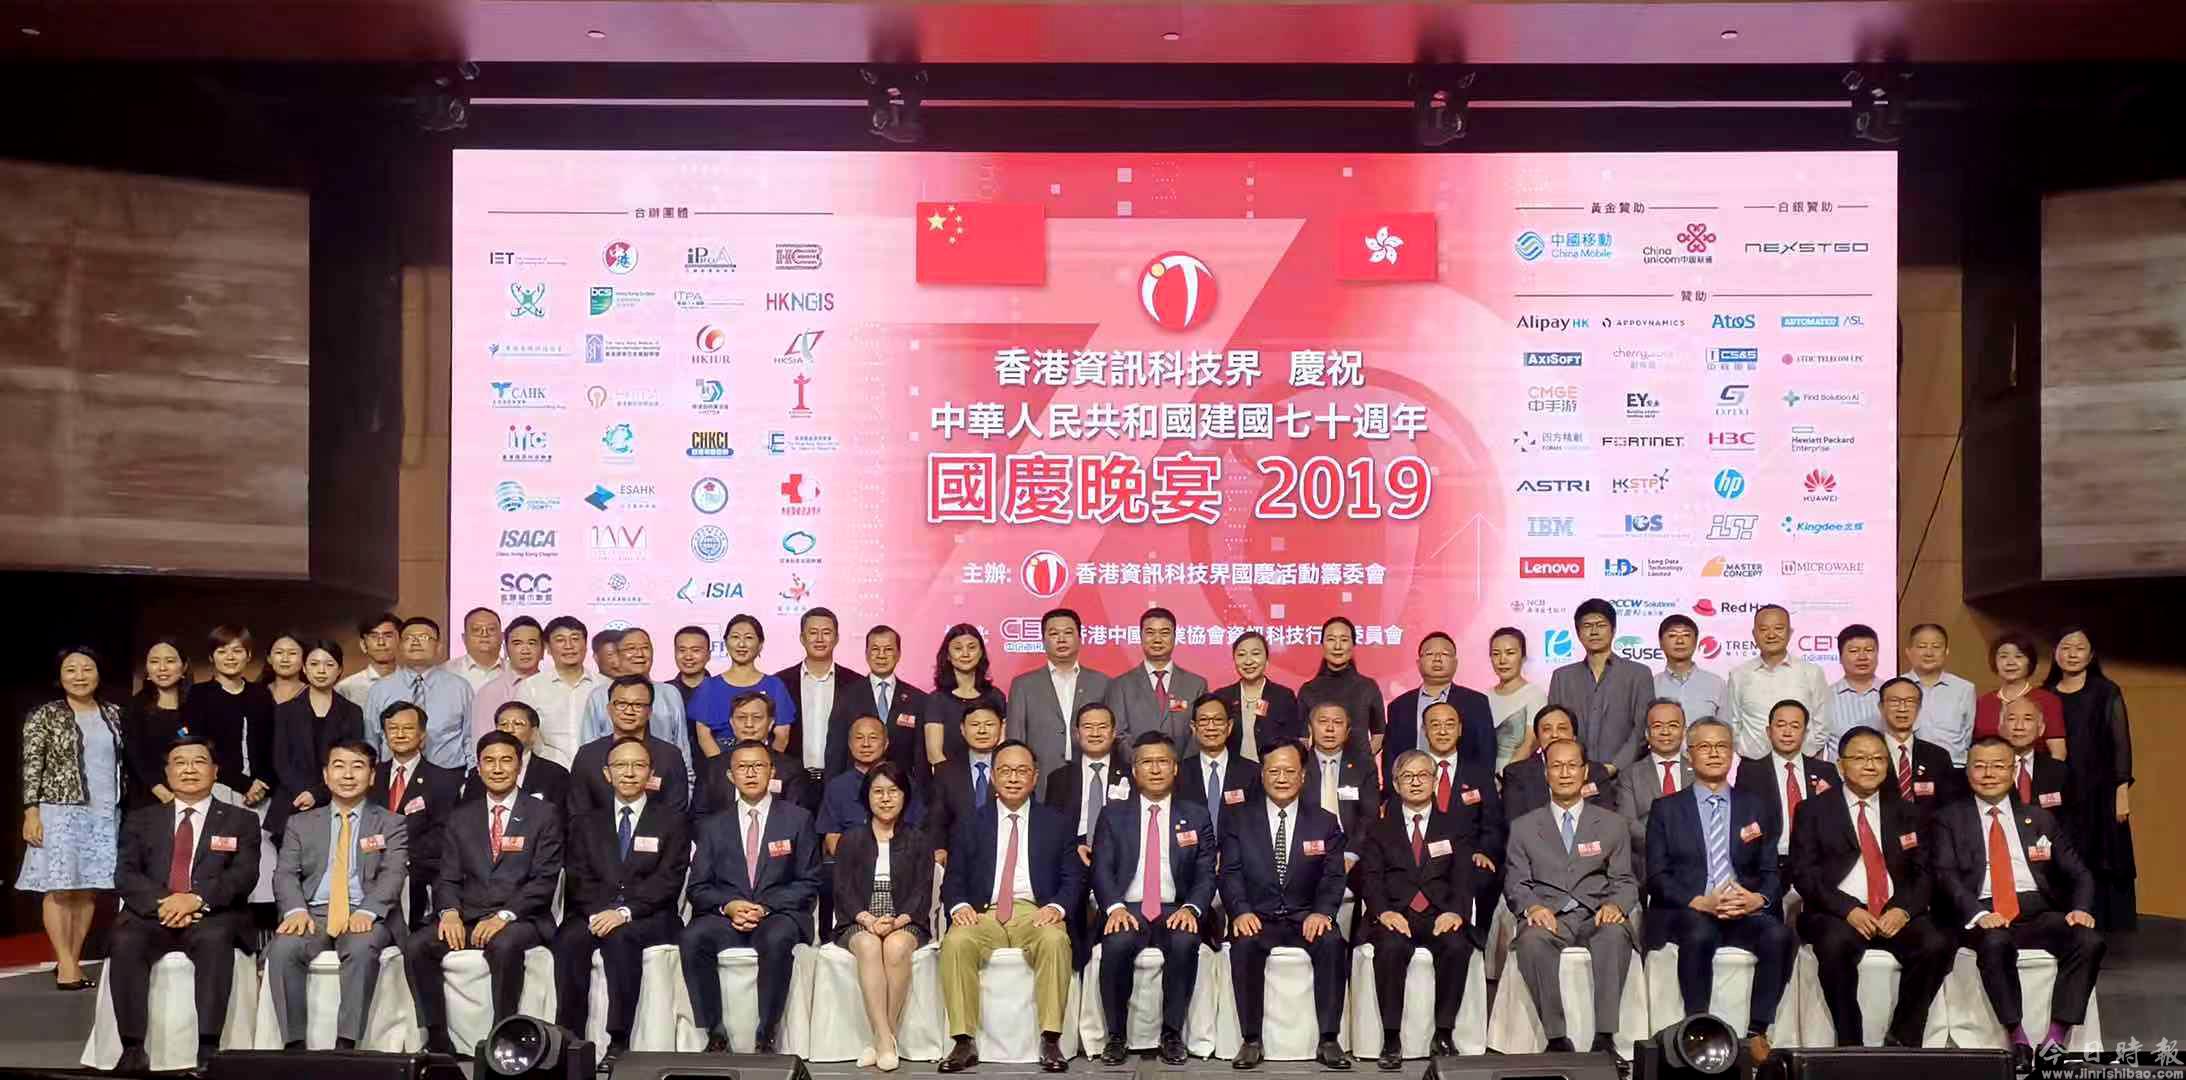 陈冬出席香港资讯科技界庆祝国庆70周年晚宴